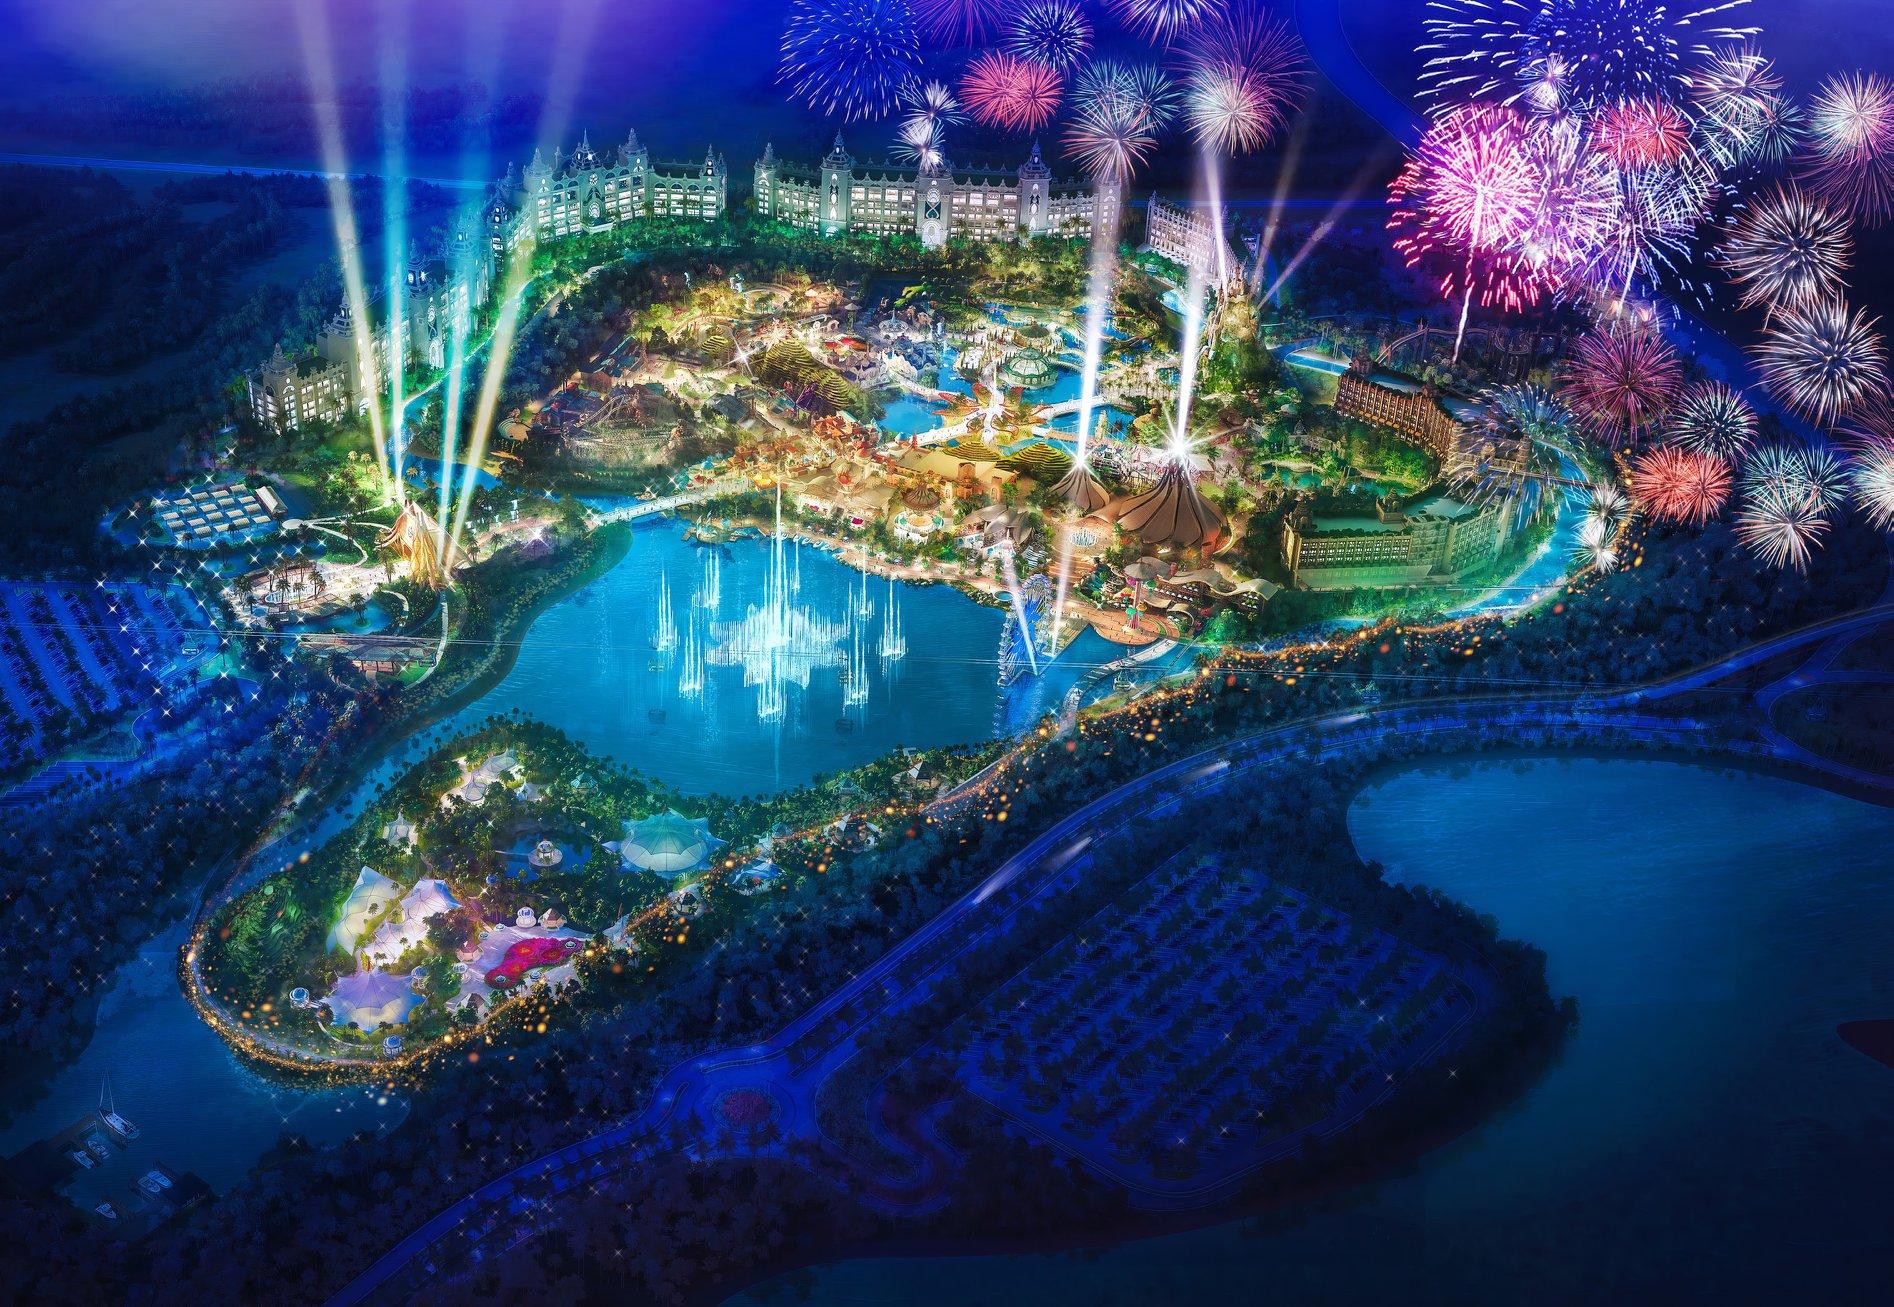 Un parc d’attractions Cirque du Soleil ouvrirait en 2020 au Mexique !